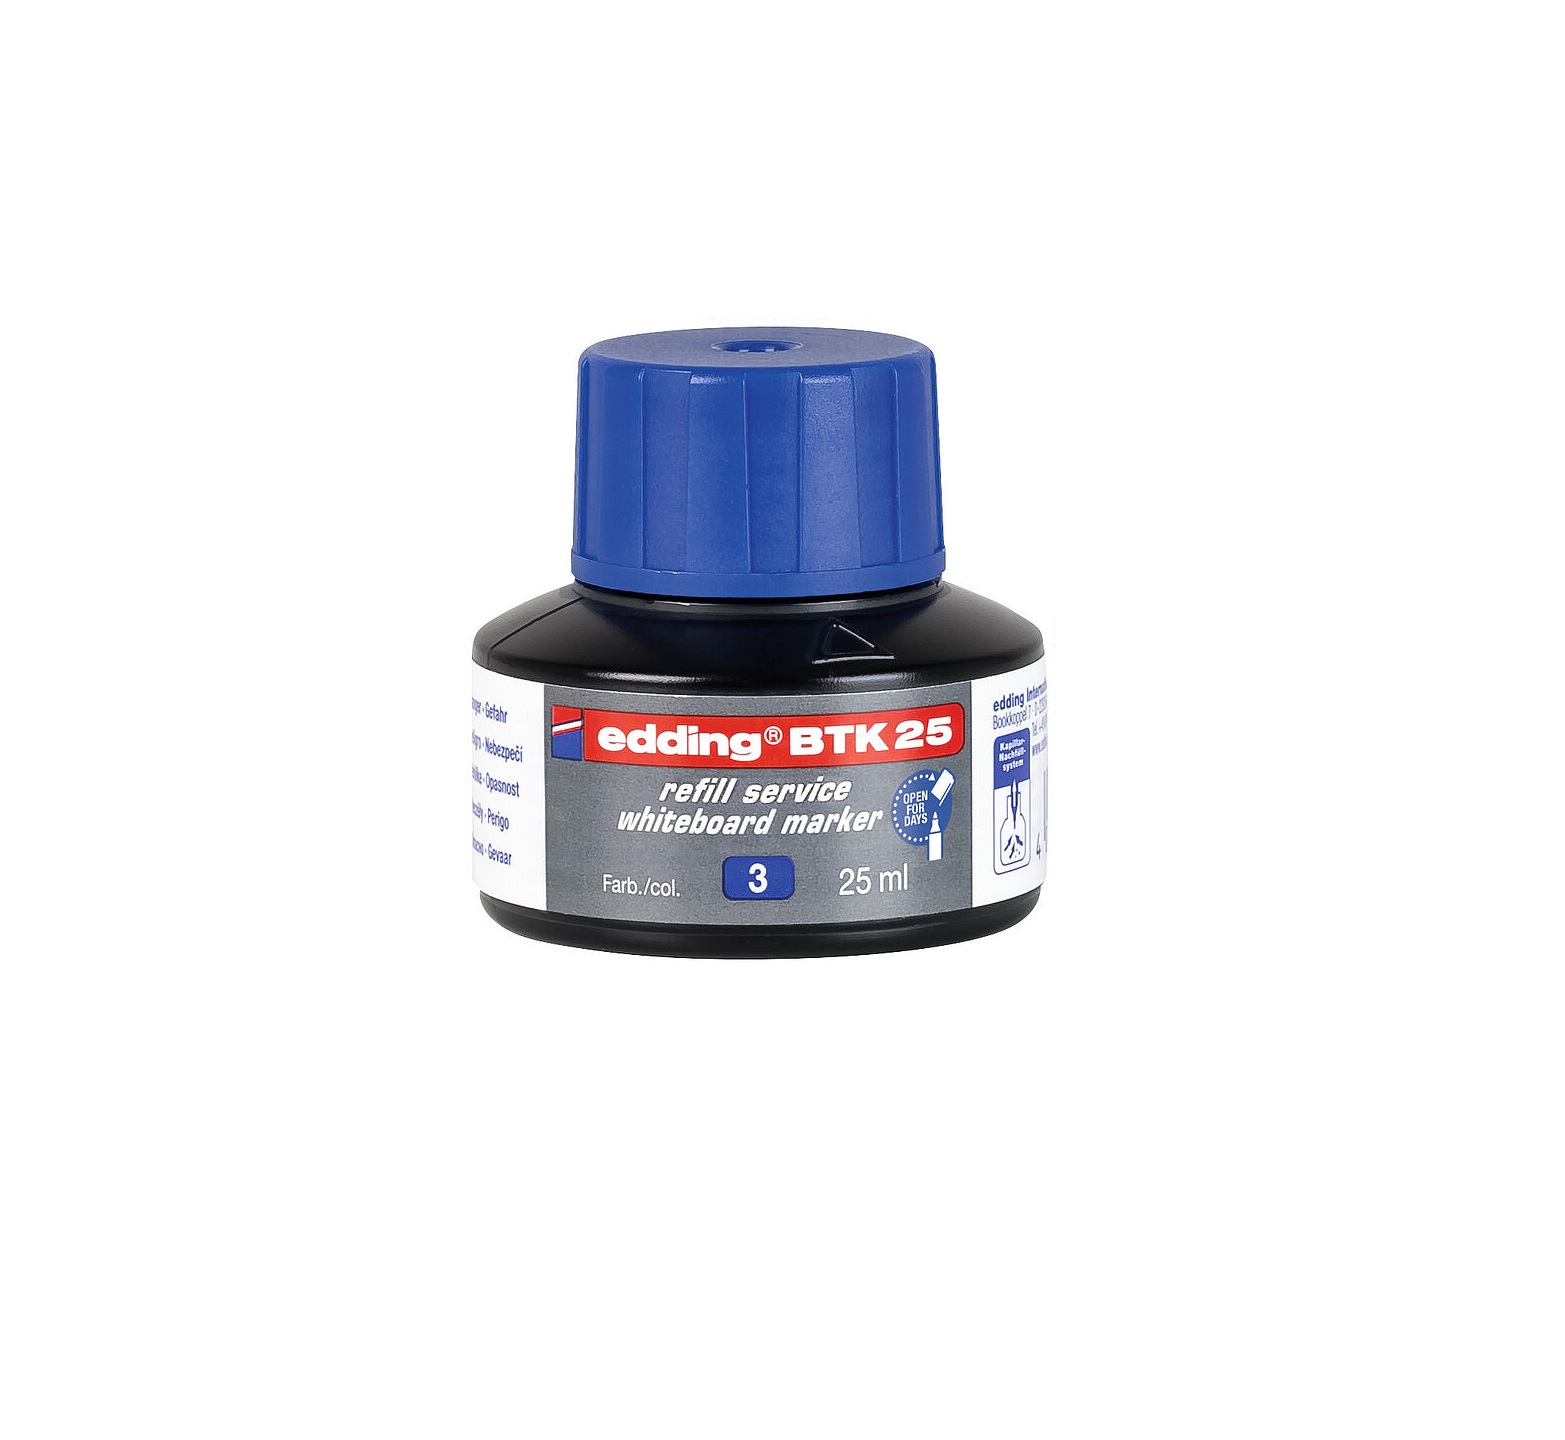 Náhradní inkoust Edding BTK 25 (25 ml) - modrý